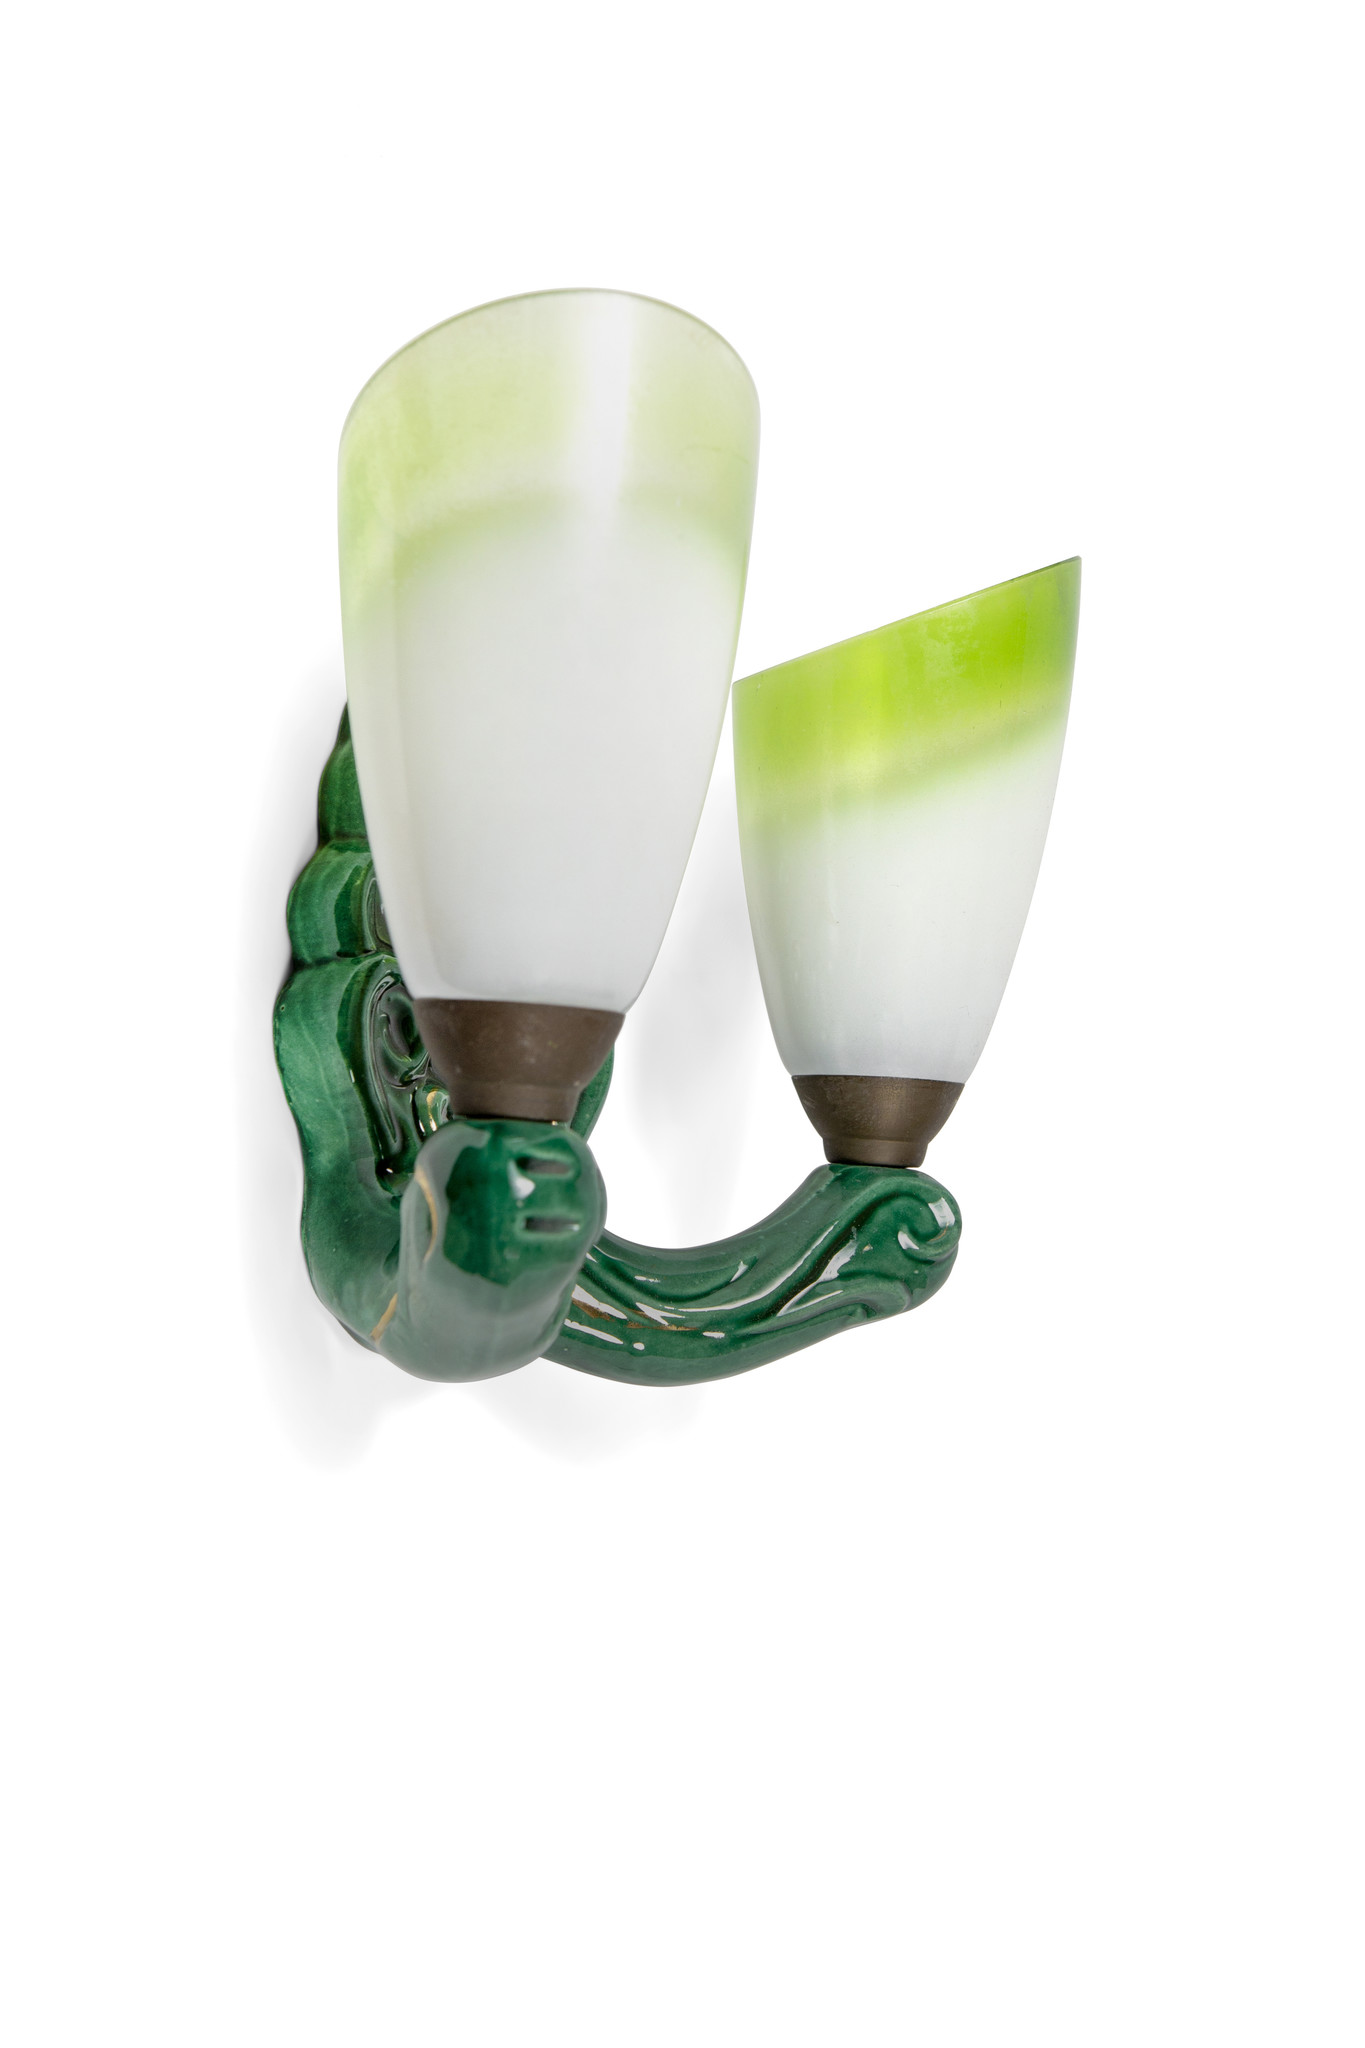 Knooppunt Becks Succesvol Groen keramieken wandlamp met glazen kapjes - Lamplord